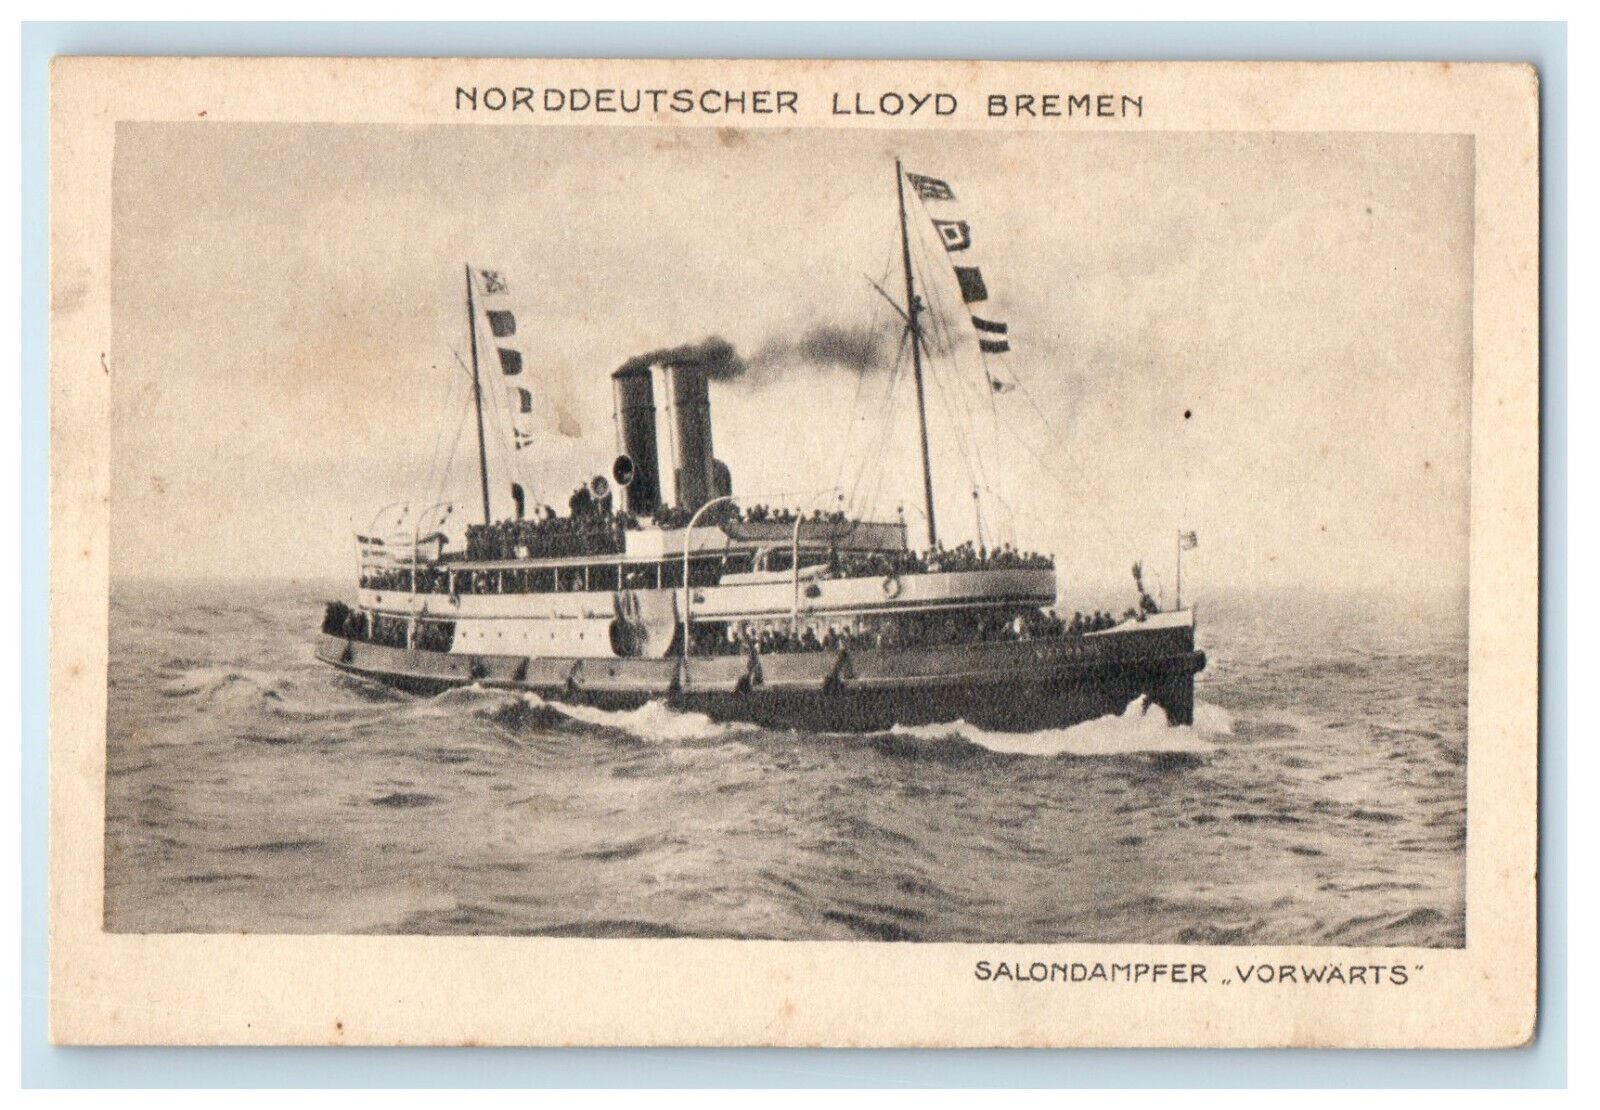 c1920s Norddeutscher Lloyd Bremen, Salondampfer Vorwarts Postcard